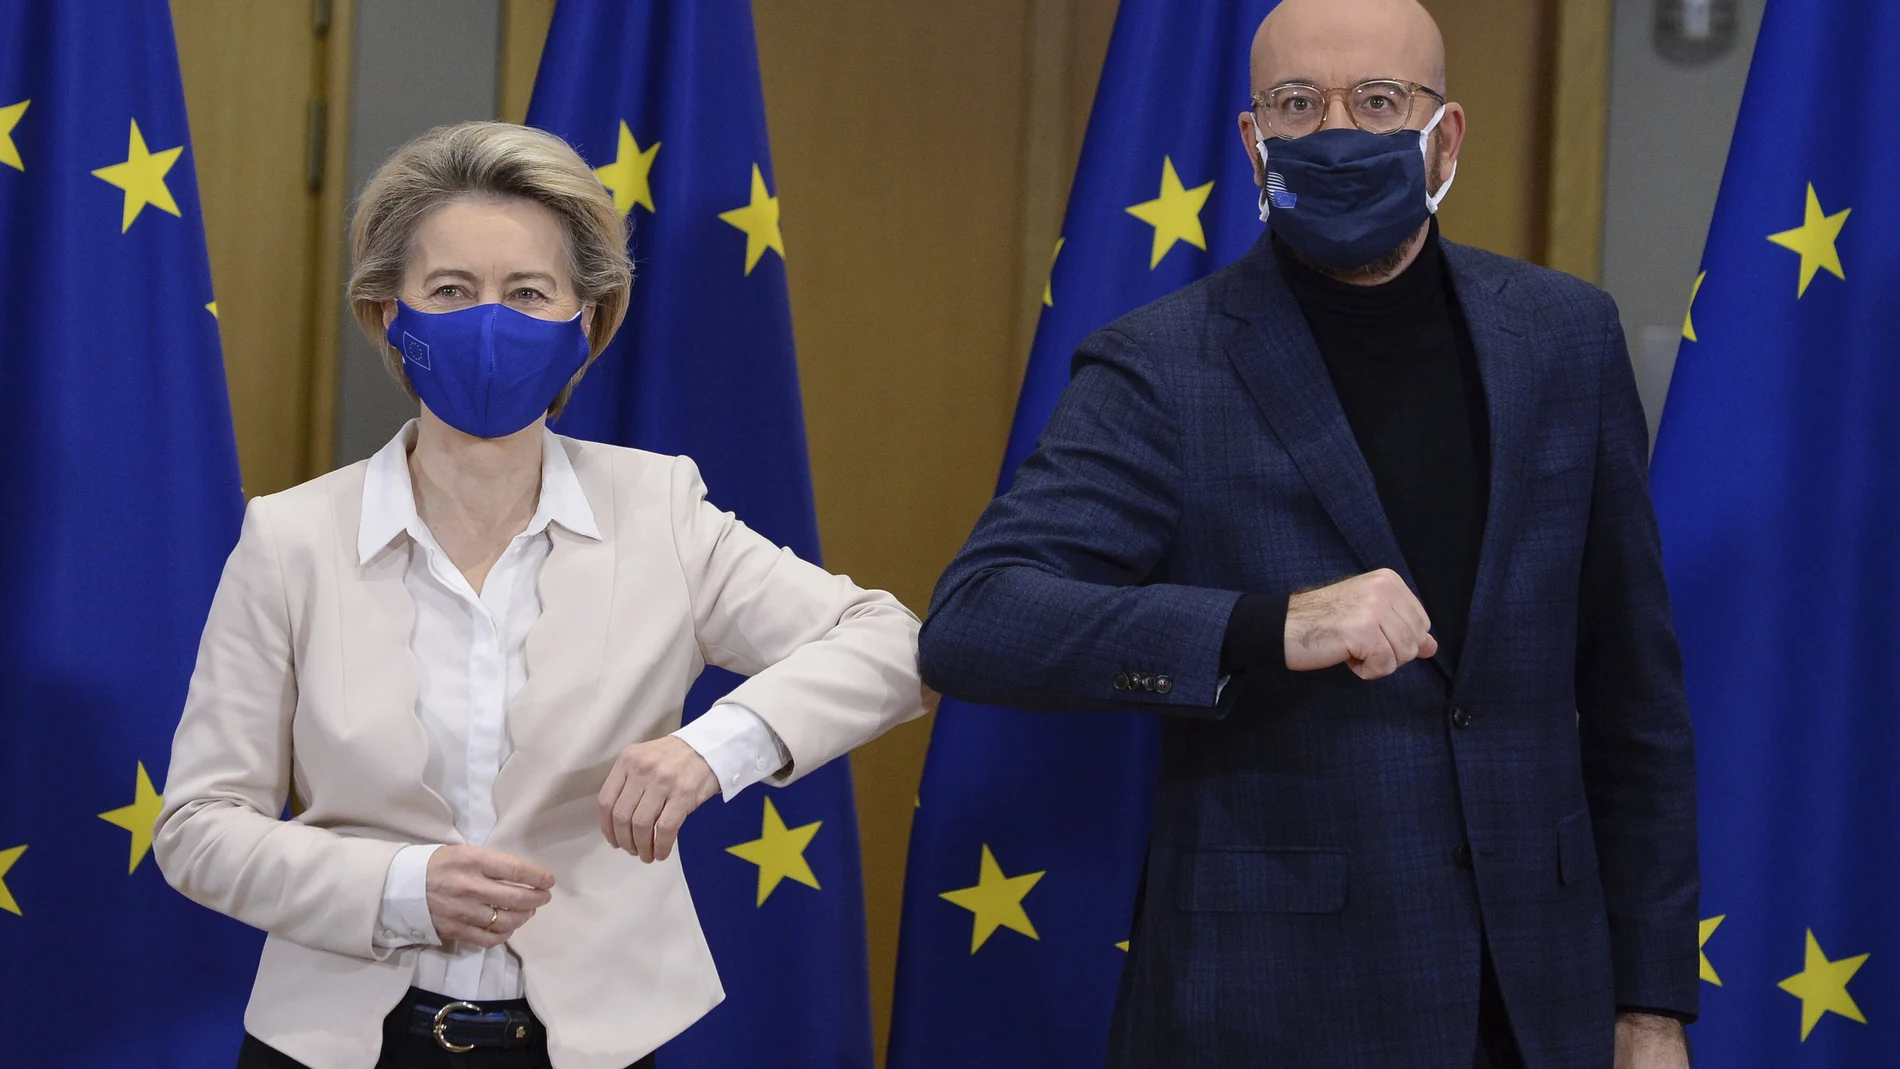 La presidenta de la Comisión Europea, Ursula von der Leyen, a la izquierda, y el presidente del Consejo Europeo, Charles Michel en la sede del Consejo Europeo en Bruselas